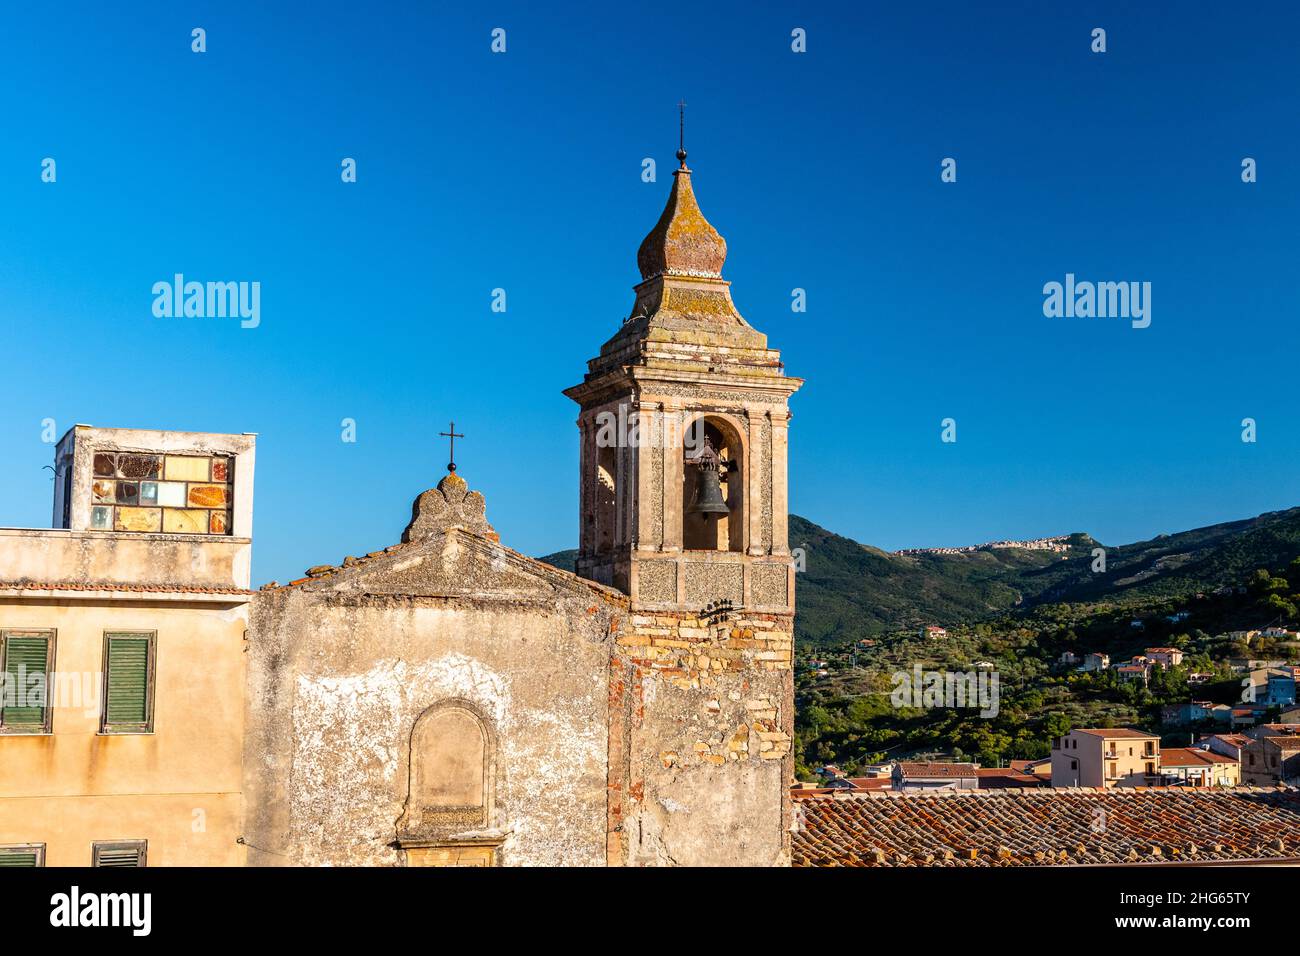 Chiesa di Santa Maria in piazza del castello. Castelbuono, montagna delle Madonie, Sicilia Foto Stock